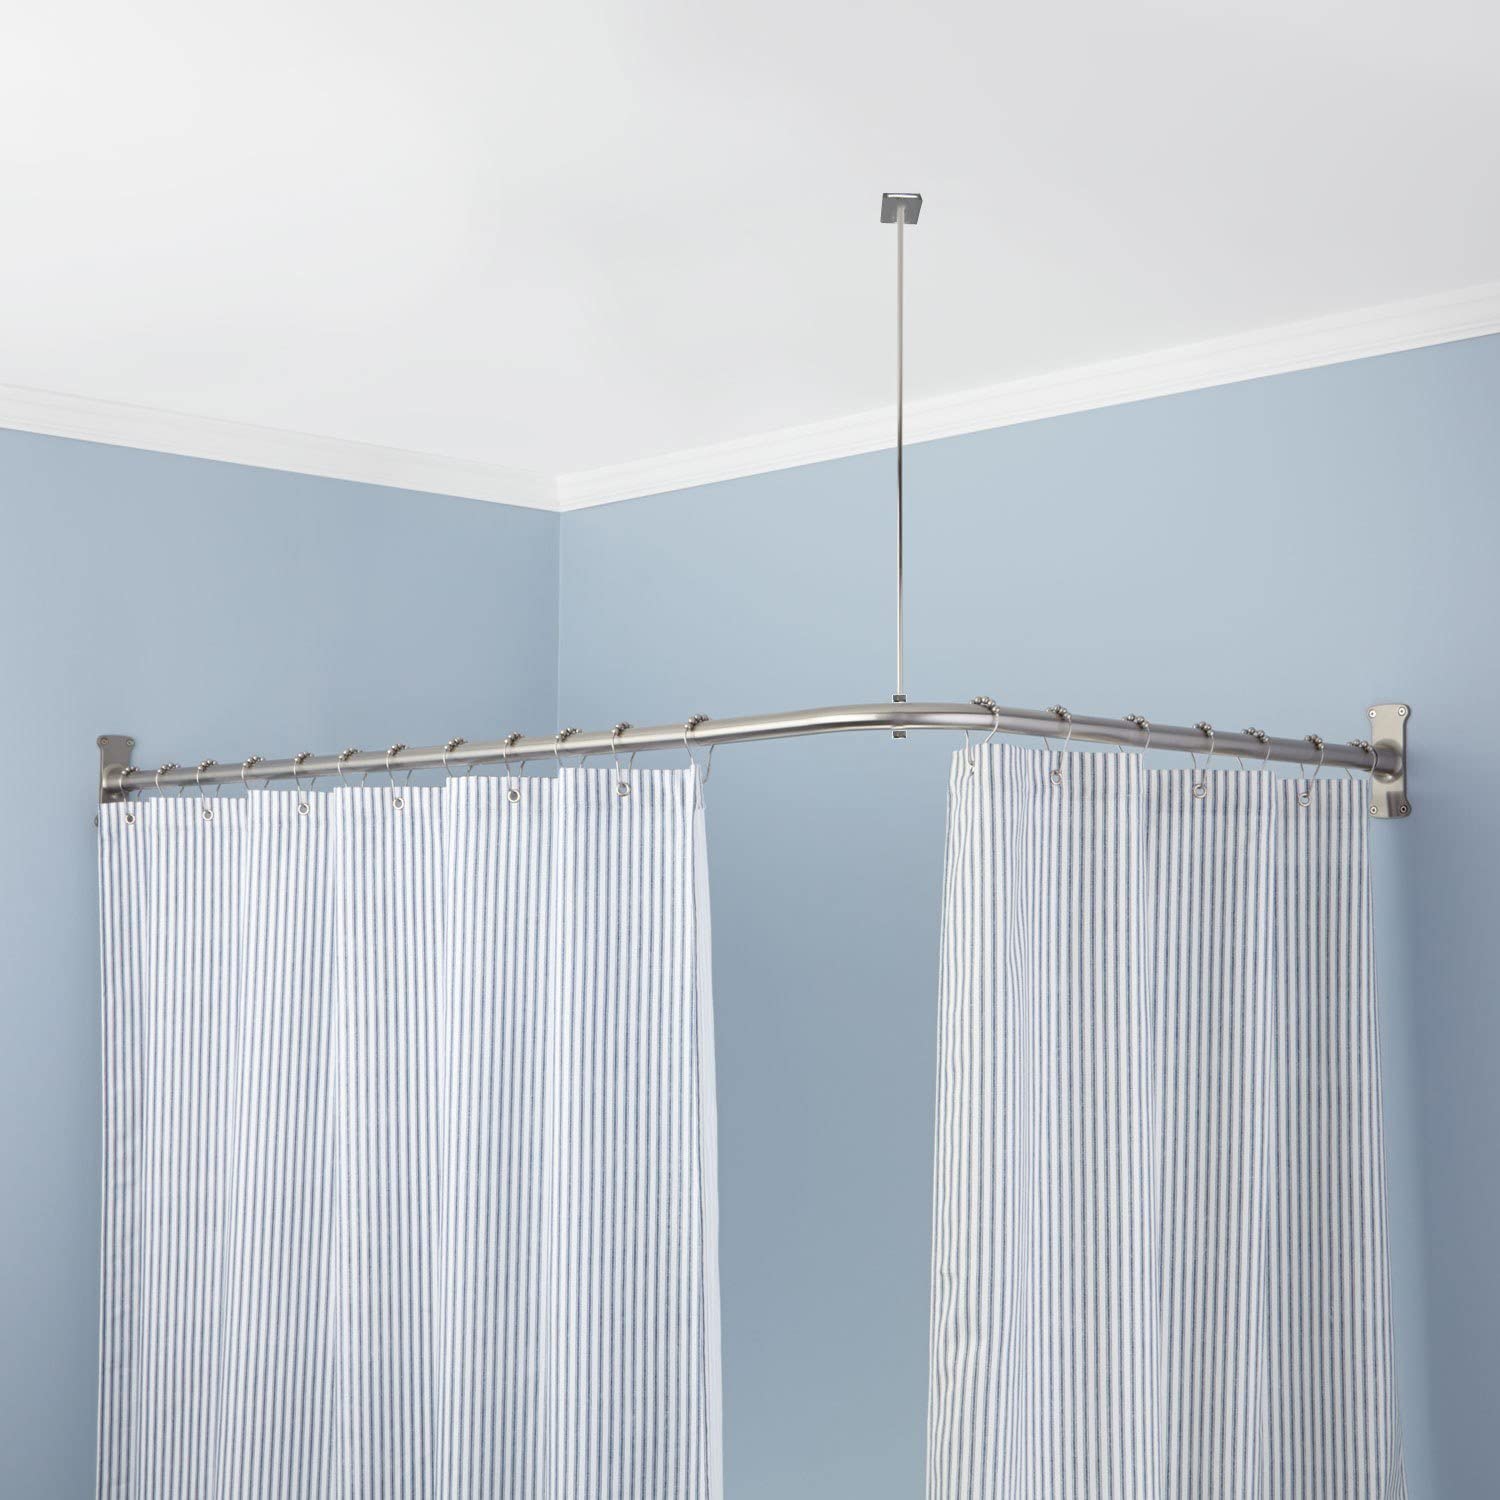 Угловая шторка для ванной и душевой: виды конструкций и выбор